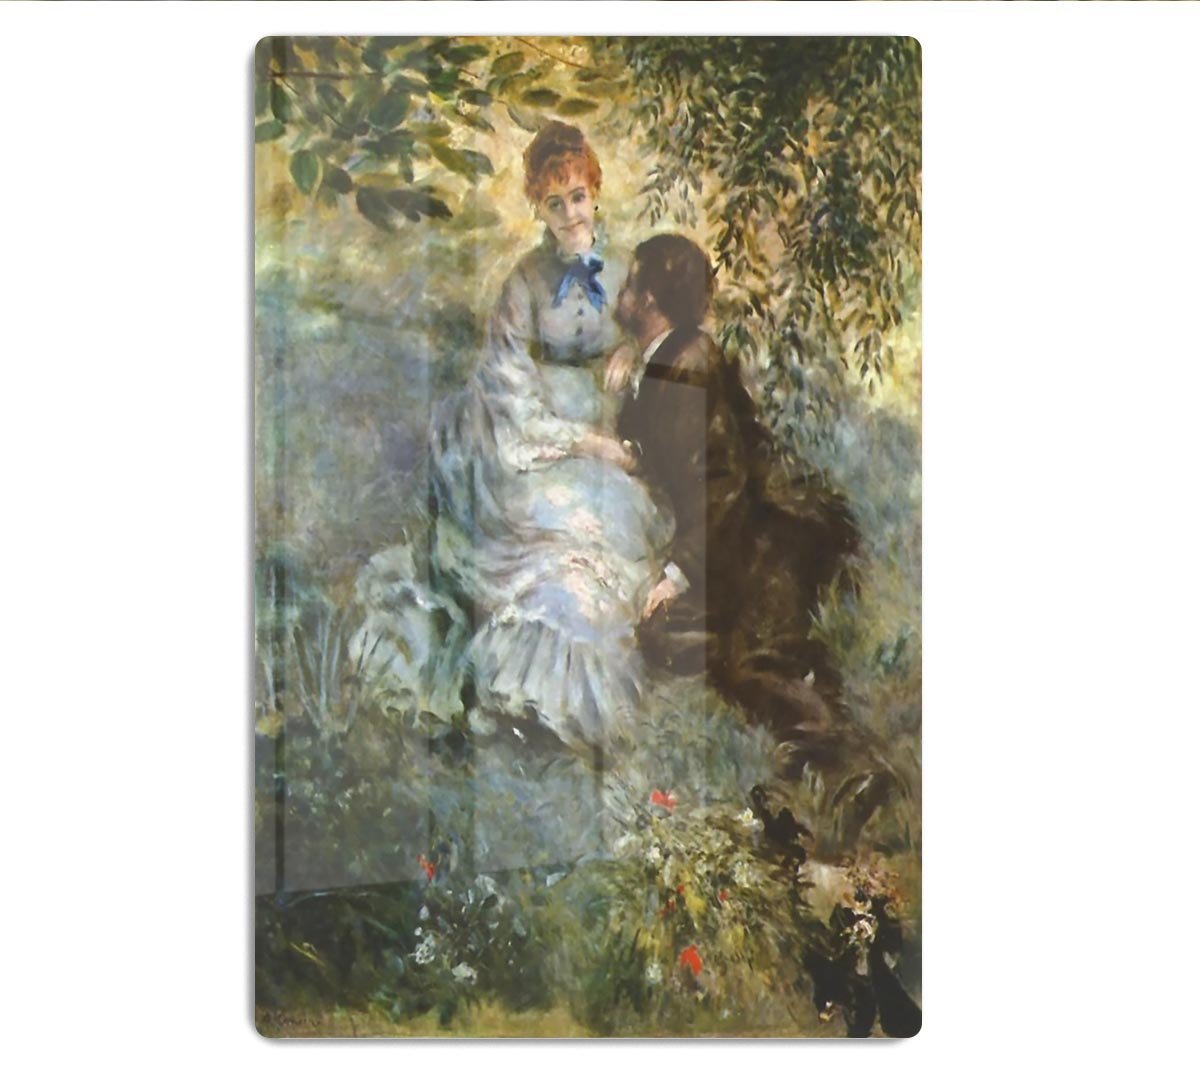 Pair of Lovers by Renoir HD Metal Print